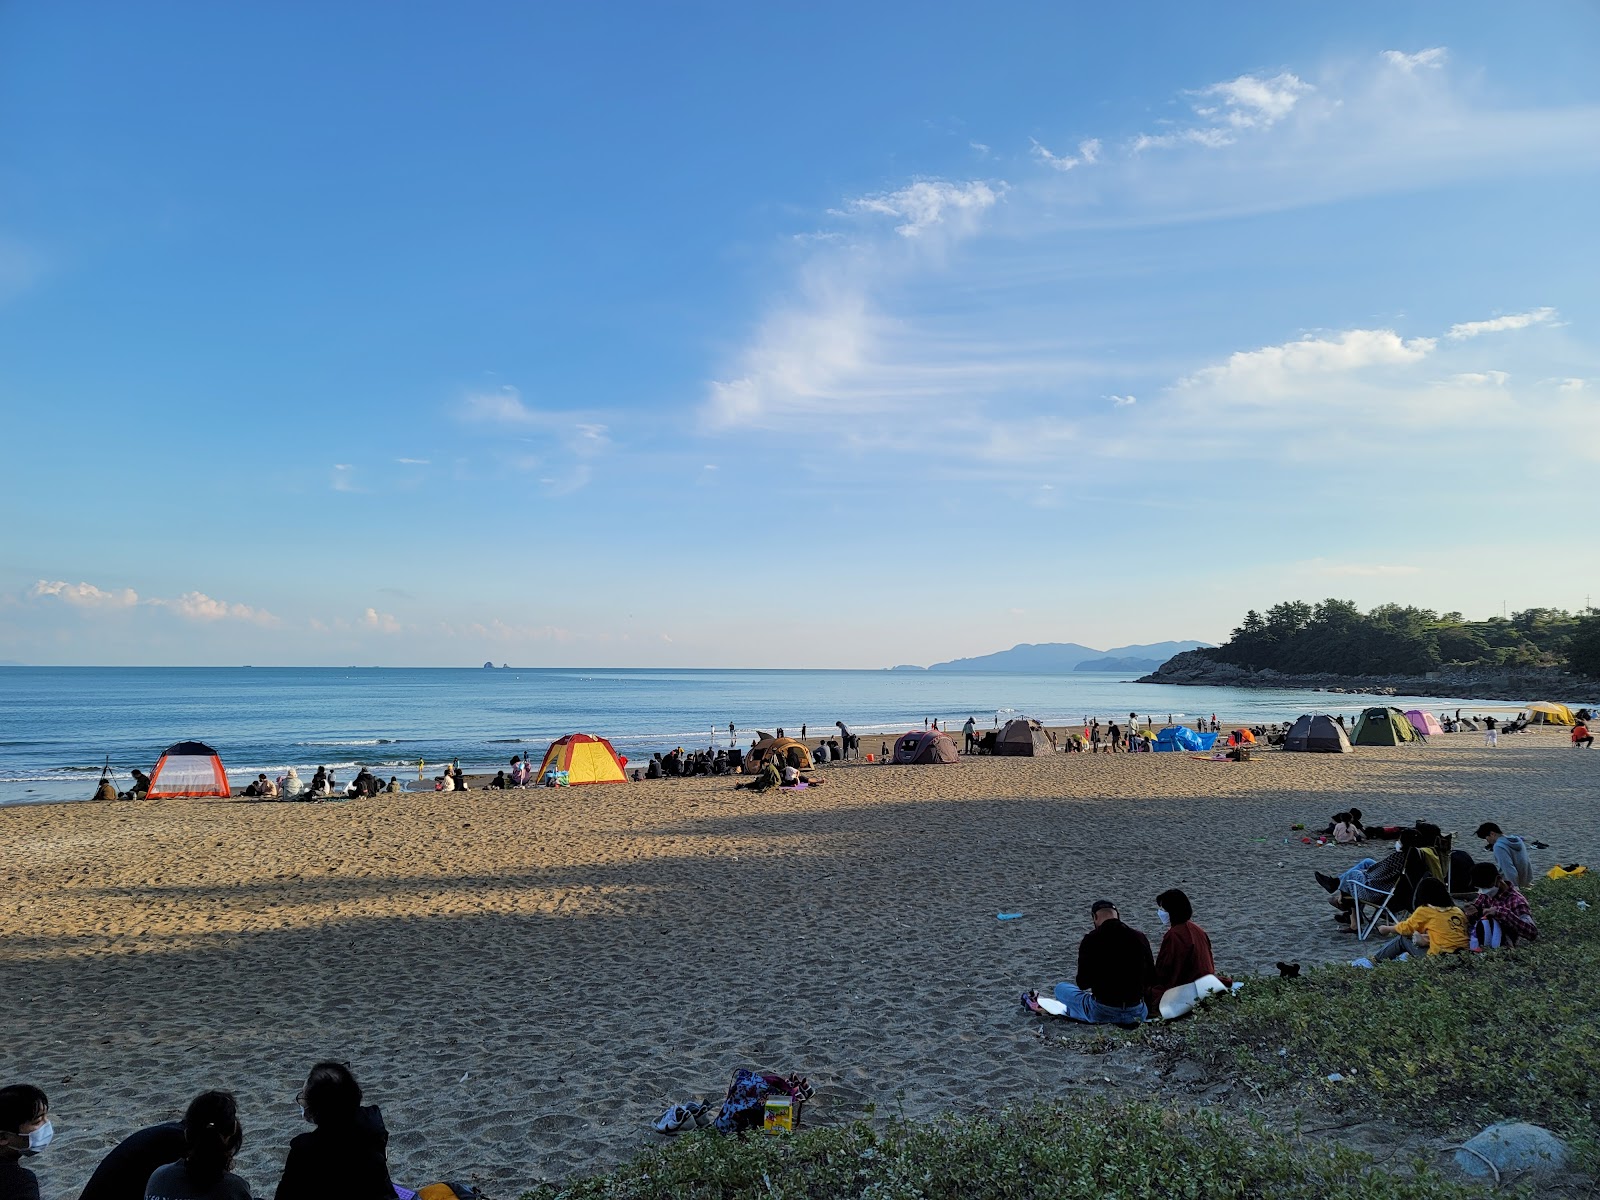 Fotografija Namyeol Sunrise Beach priljubljeno mesto med poznavalci sprostitve